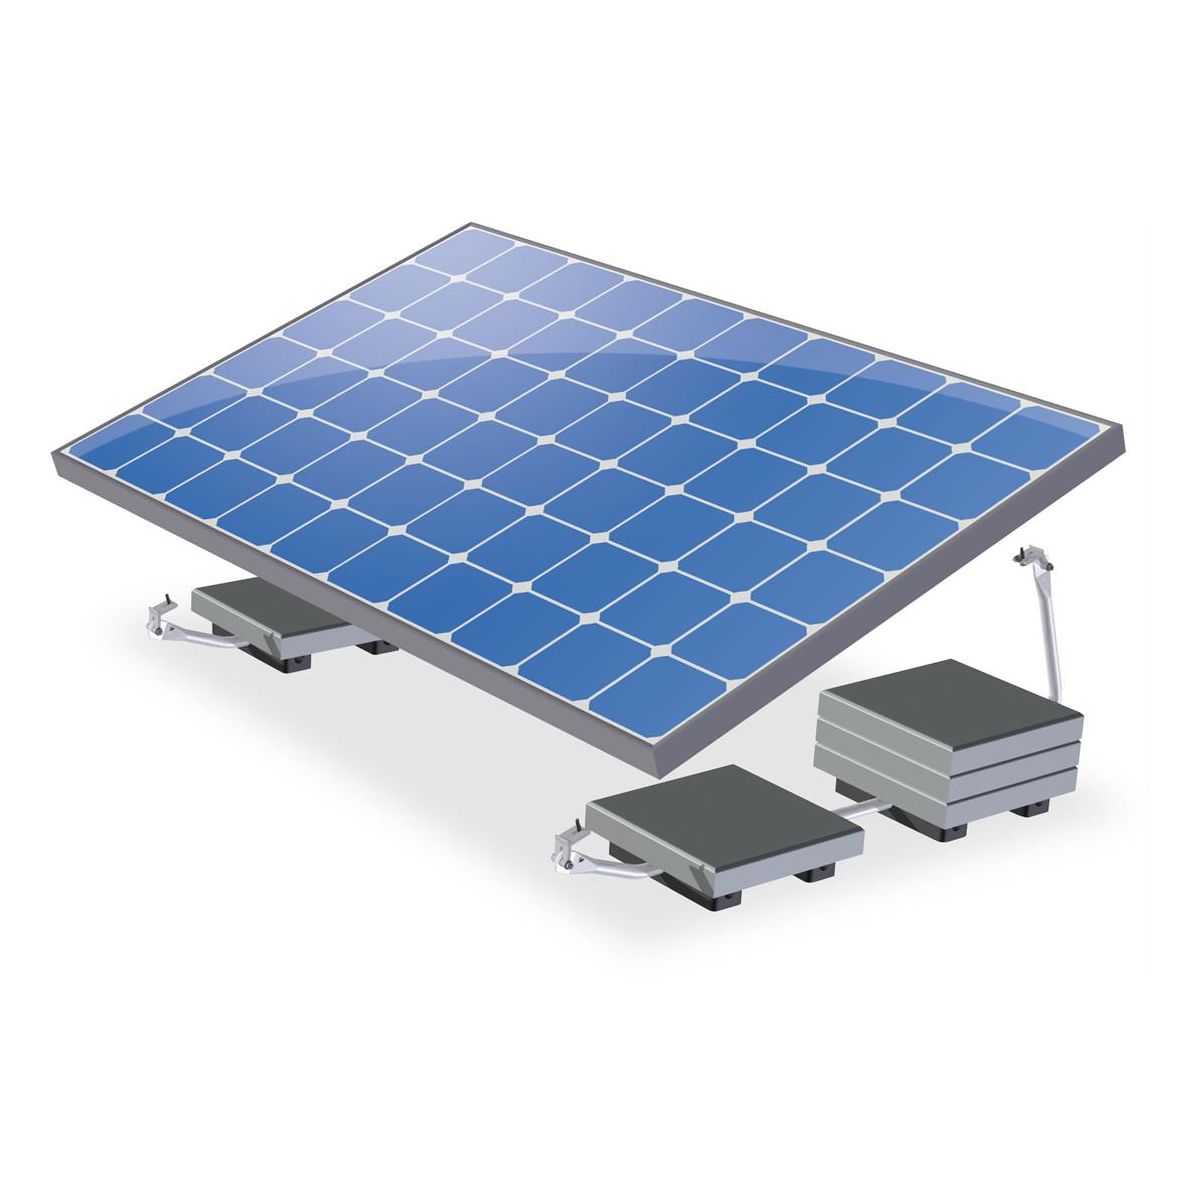 Valkbox 3 XL / Flachdach Halterung Solarmodule / Modul-Breite 115 cm Set für 1 Modul - 17° Neigung